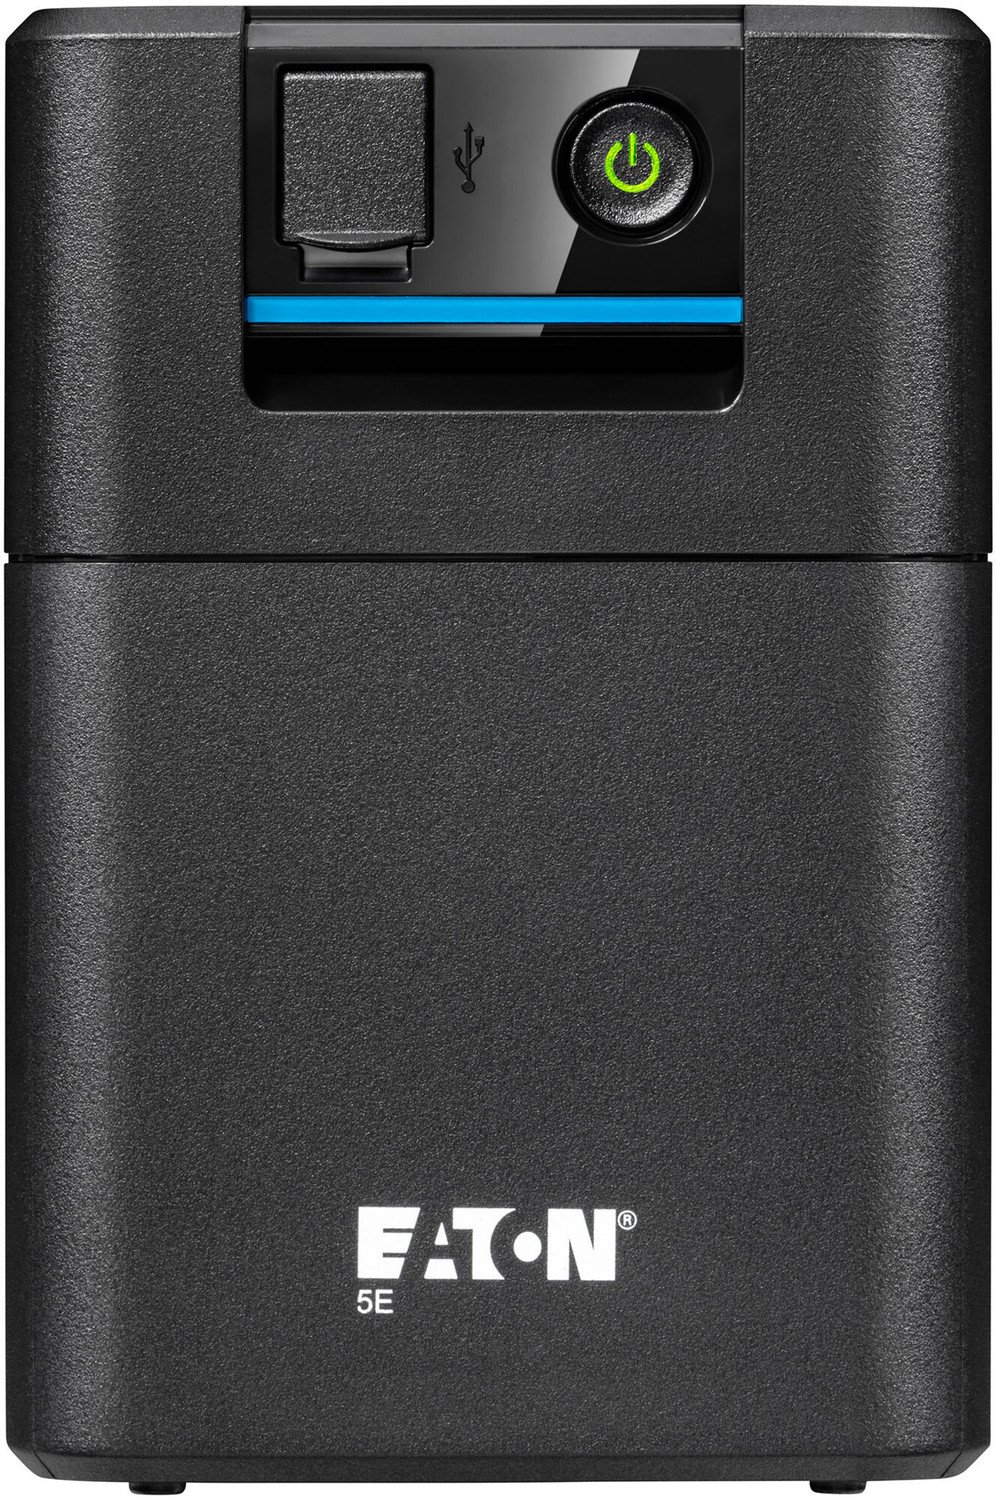 Eaton 5E 900 USB IEC G2 - 5E900UI